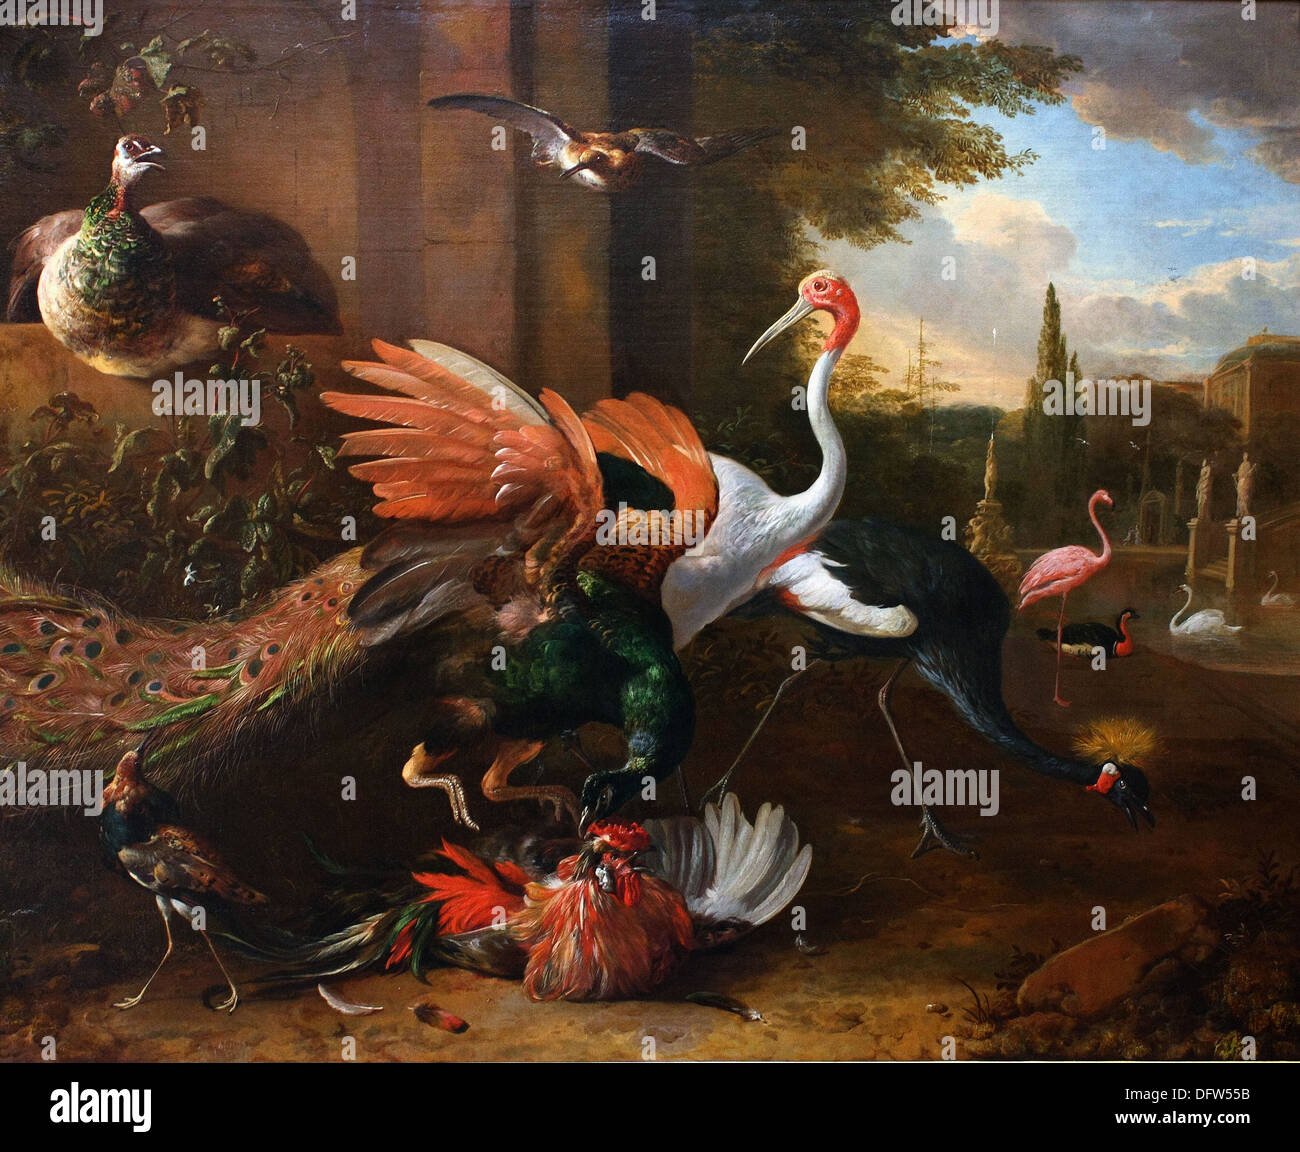 Melchior de HONDECOETER - lutte entre un paon et un coq -1670 - Musée des beaux-arts - Budapest, Hongrie. Banque D'Images